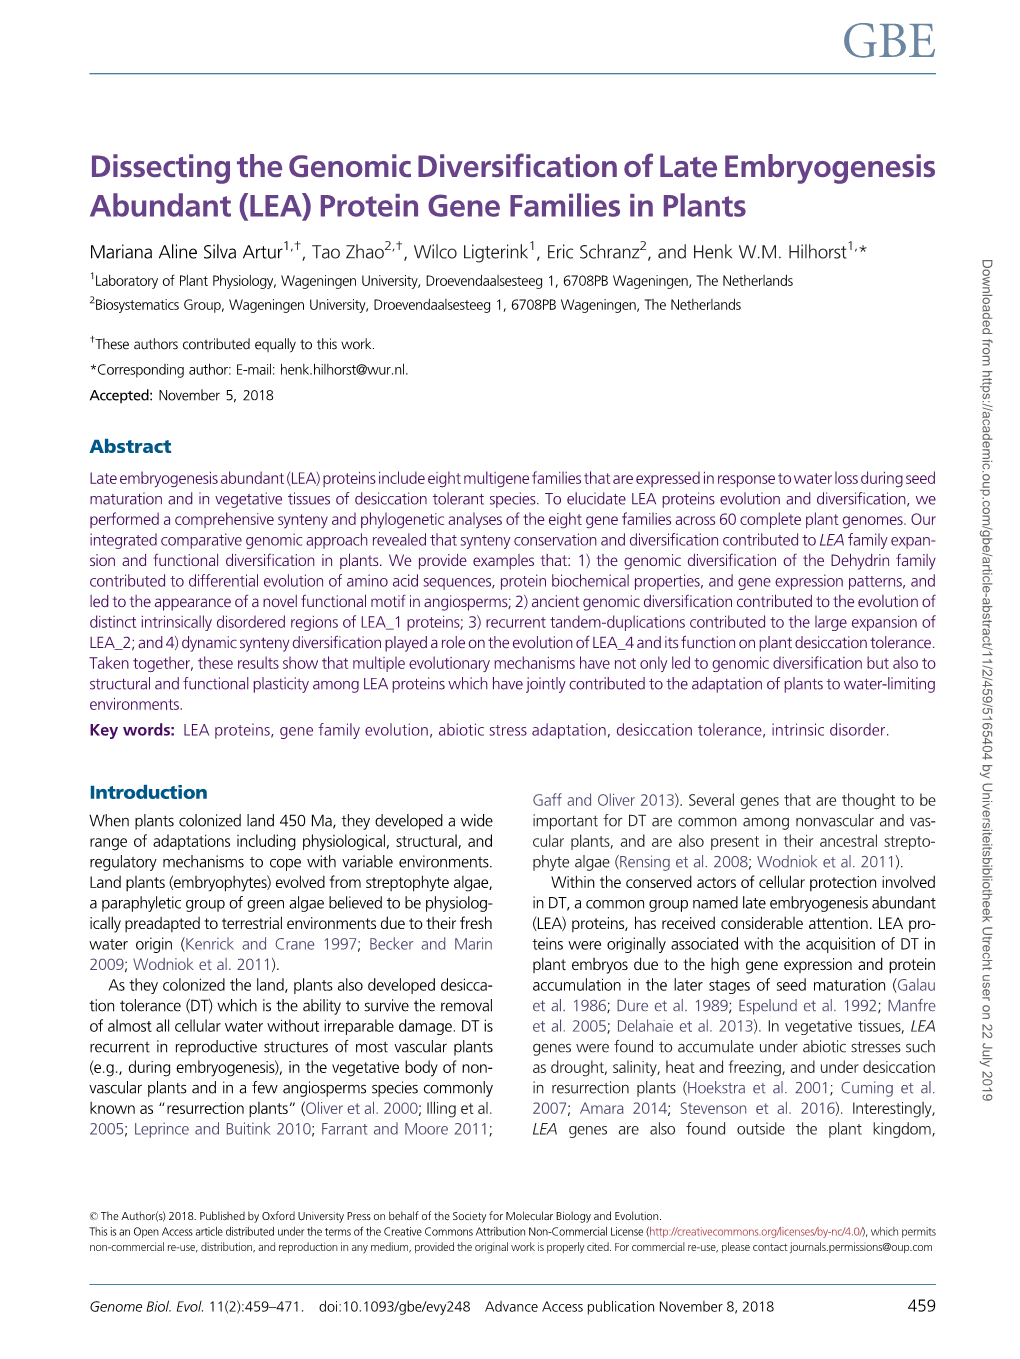 (LEA) Protein Gene Families in Plants